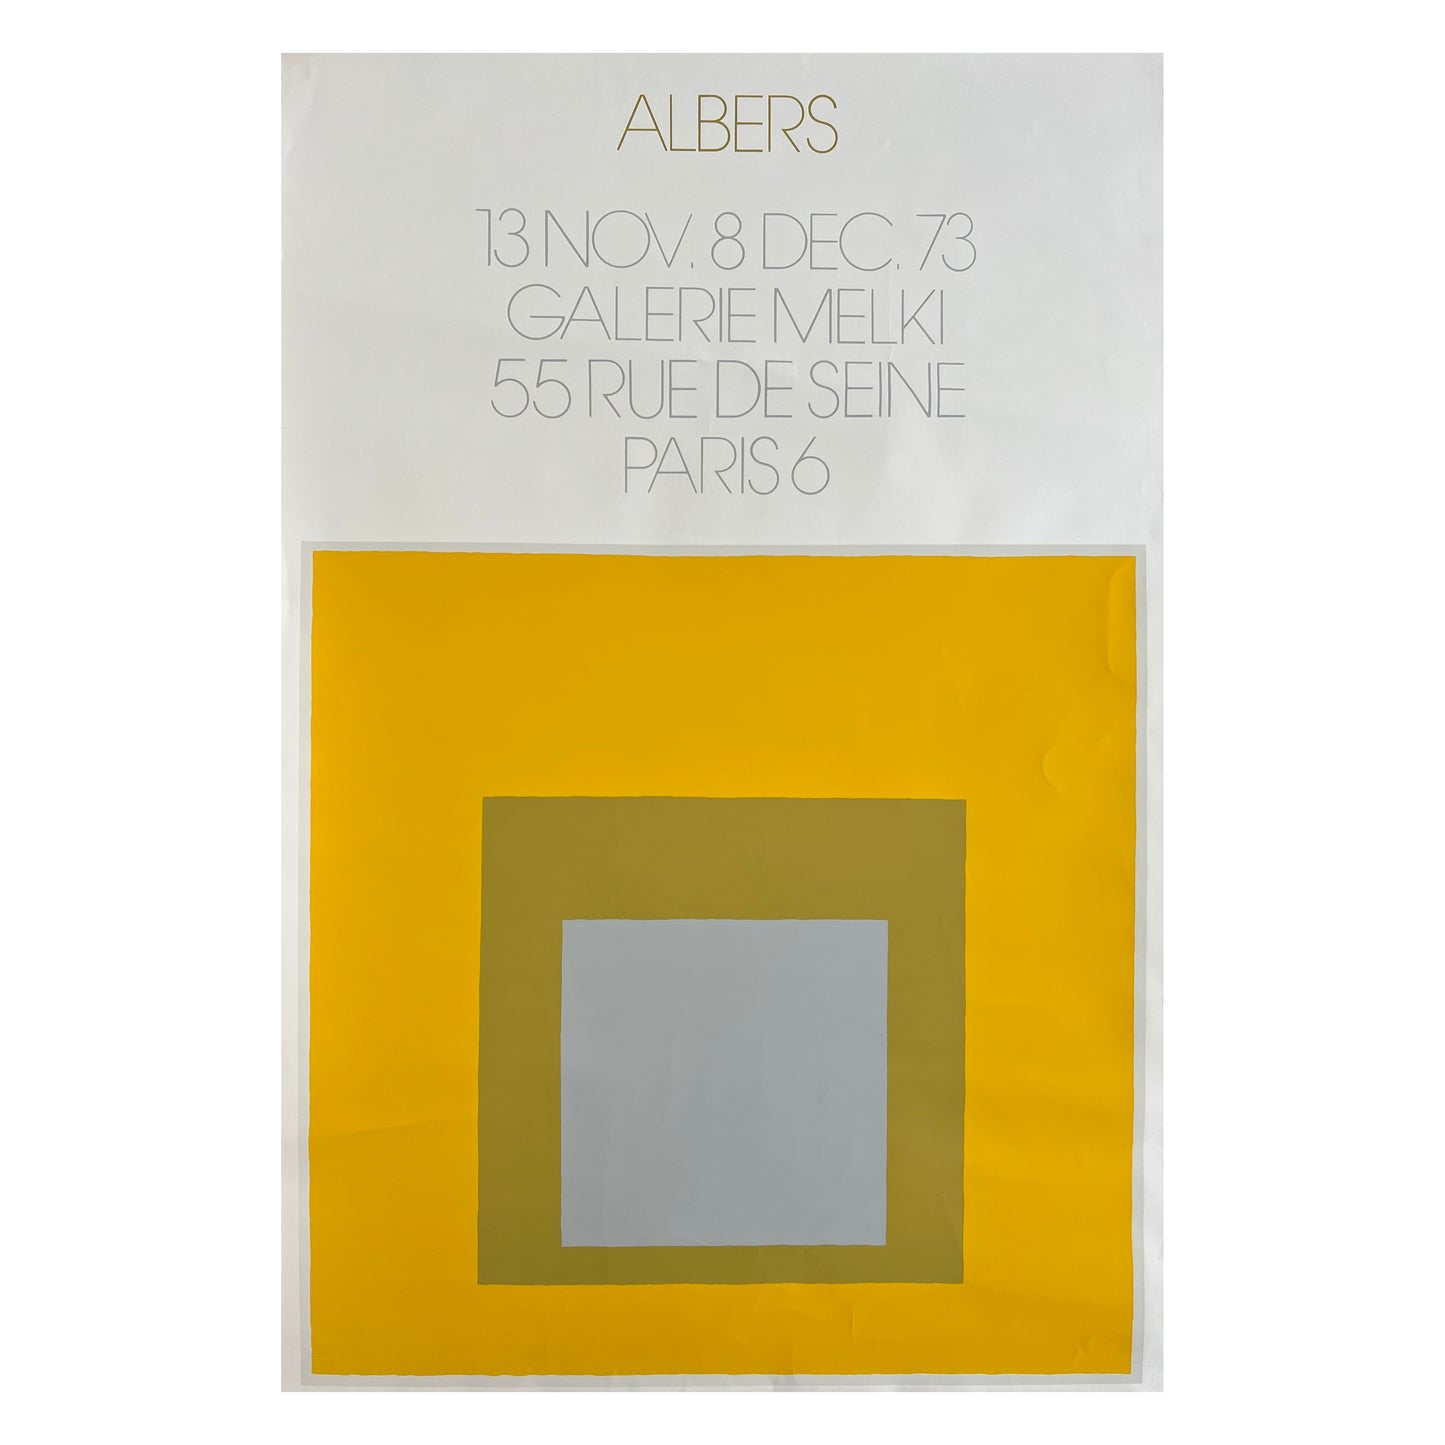 Josef Albers. "Melki Gallery", 1973